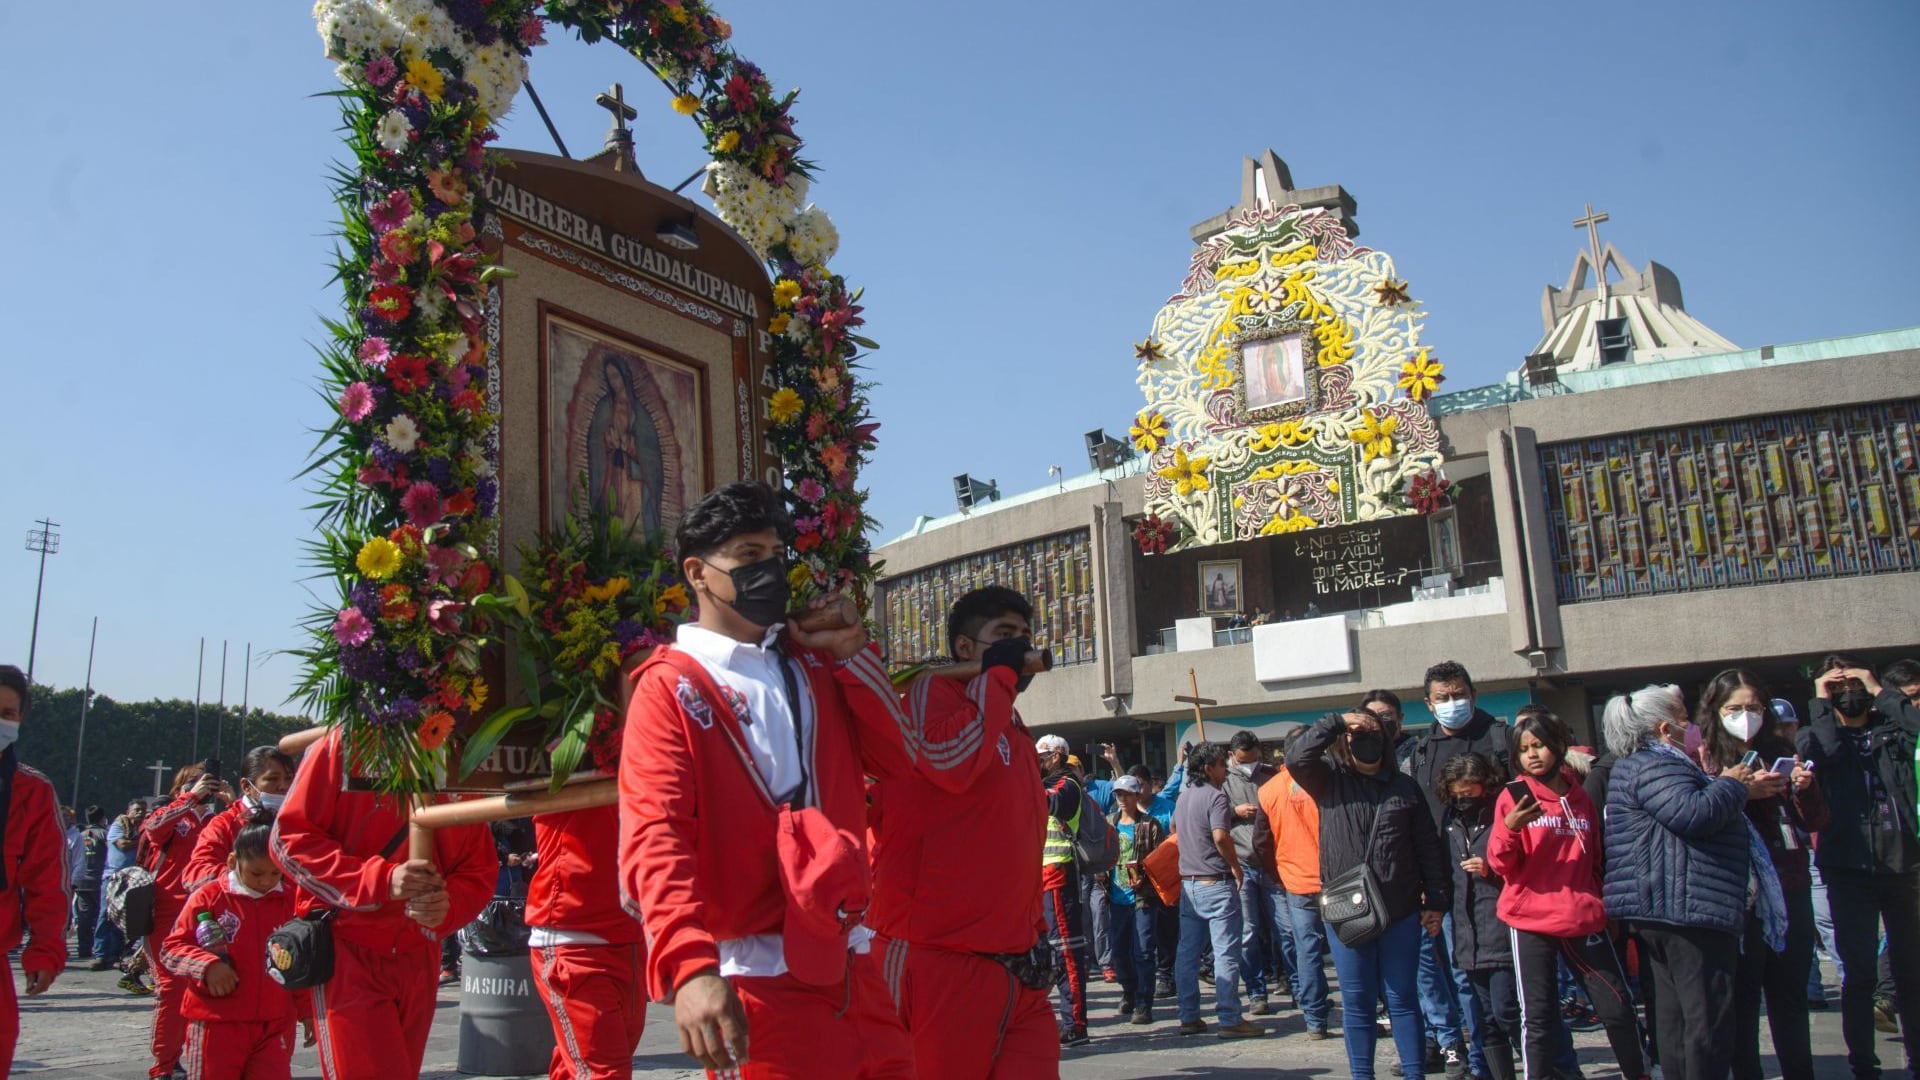 Miles de peregrinos de diferentes estados del País continúan llegando a la Basílica de Guadalupe, a pocos días del aniversario de la aparición de la Virgen de Guadalupe en el Tepeyac.